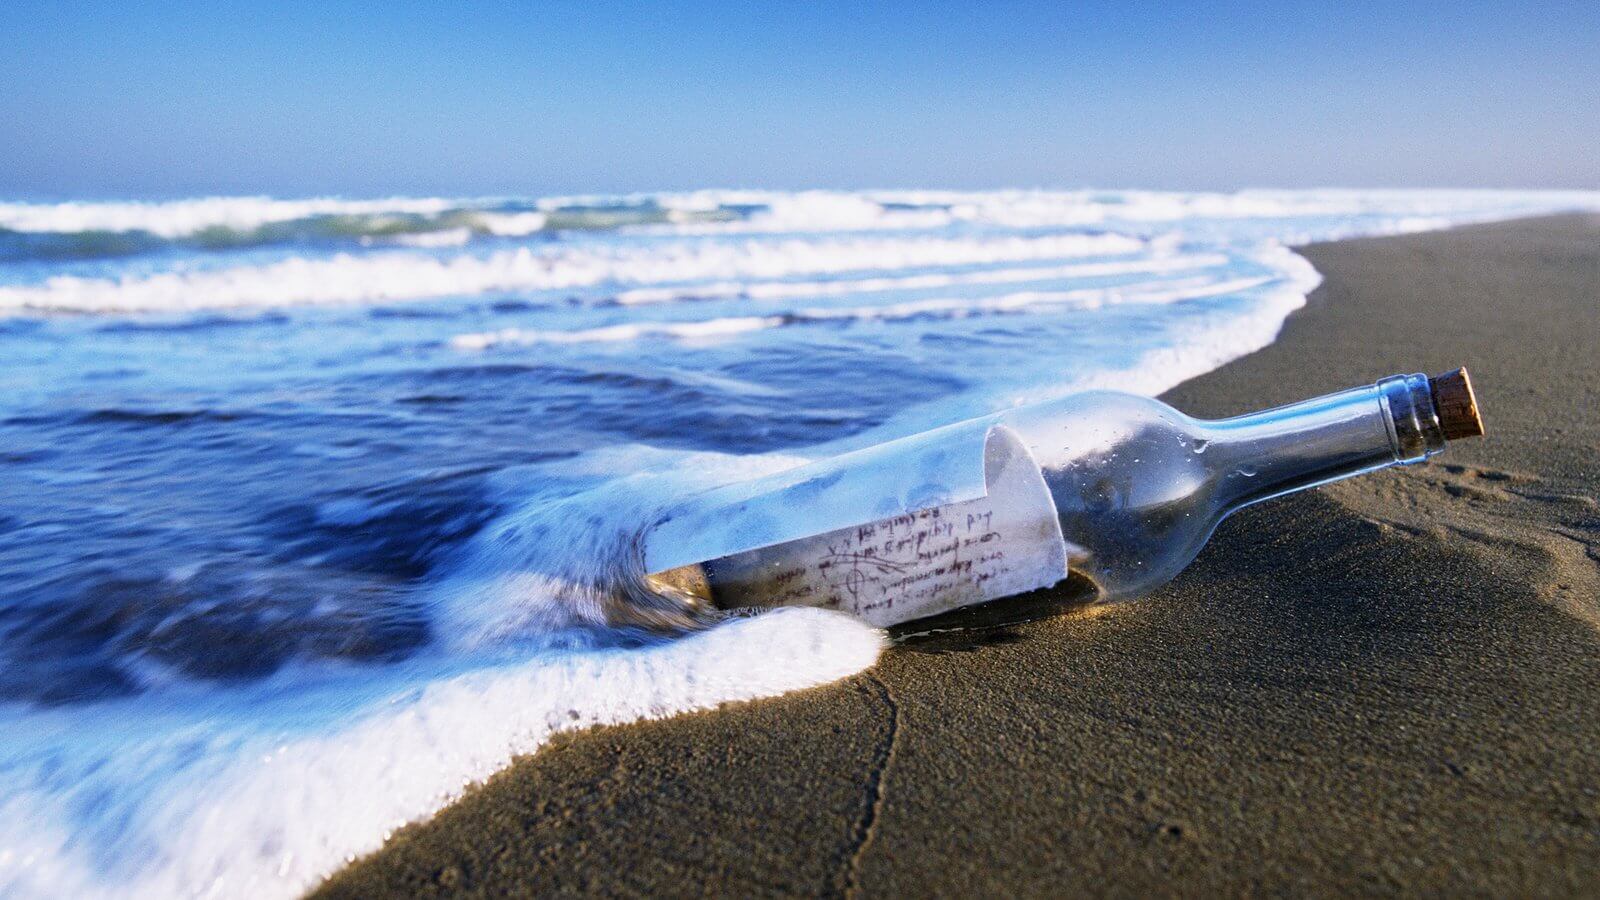 多少可以浮动的消息在一个瓶子，如果要把它扔进了大海吗？